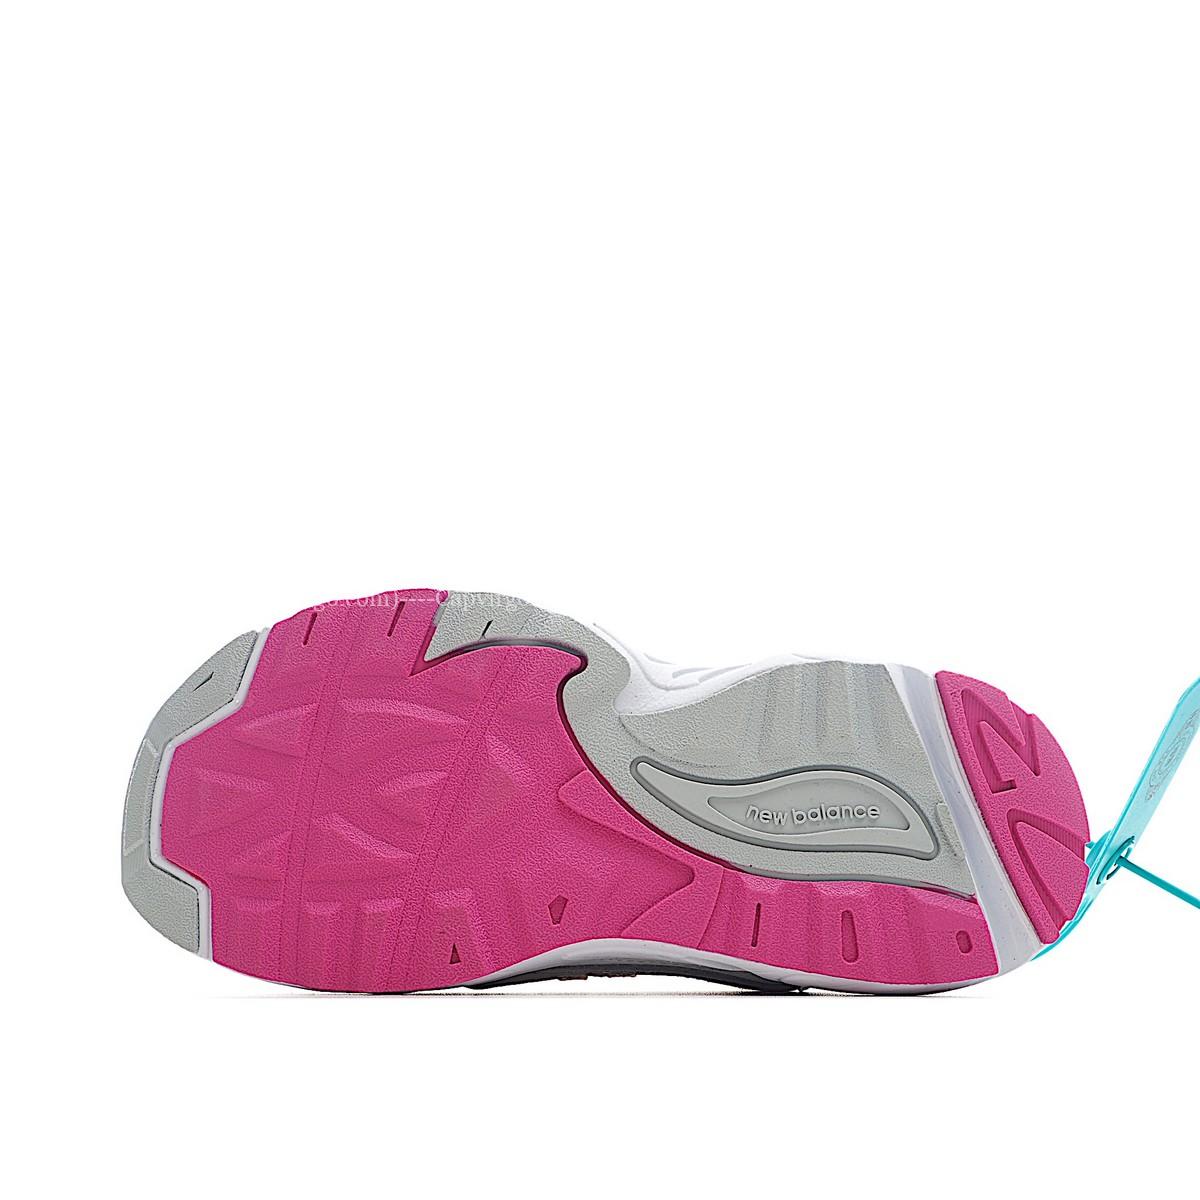 Giày chạy bộ trẻ em newbalance 878 - NB878 màu hồng trắng